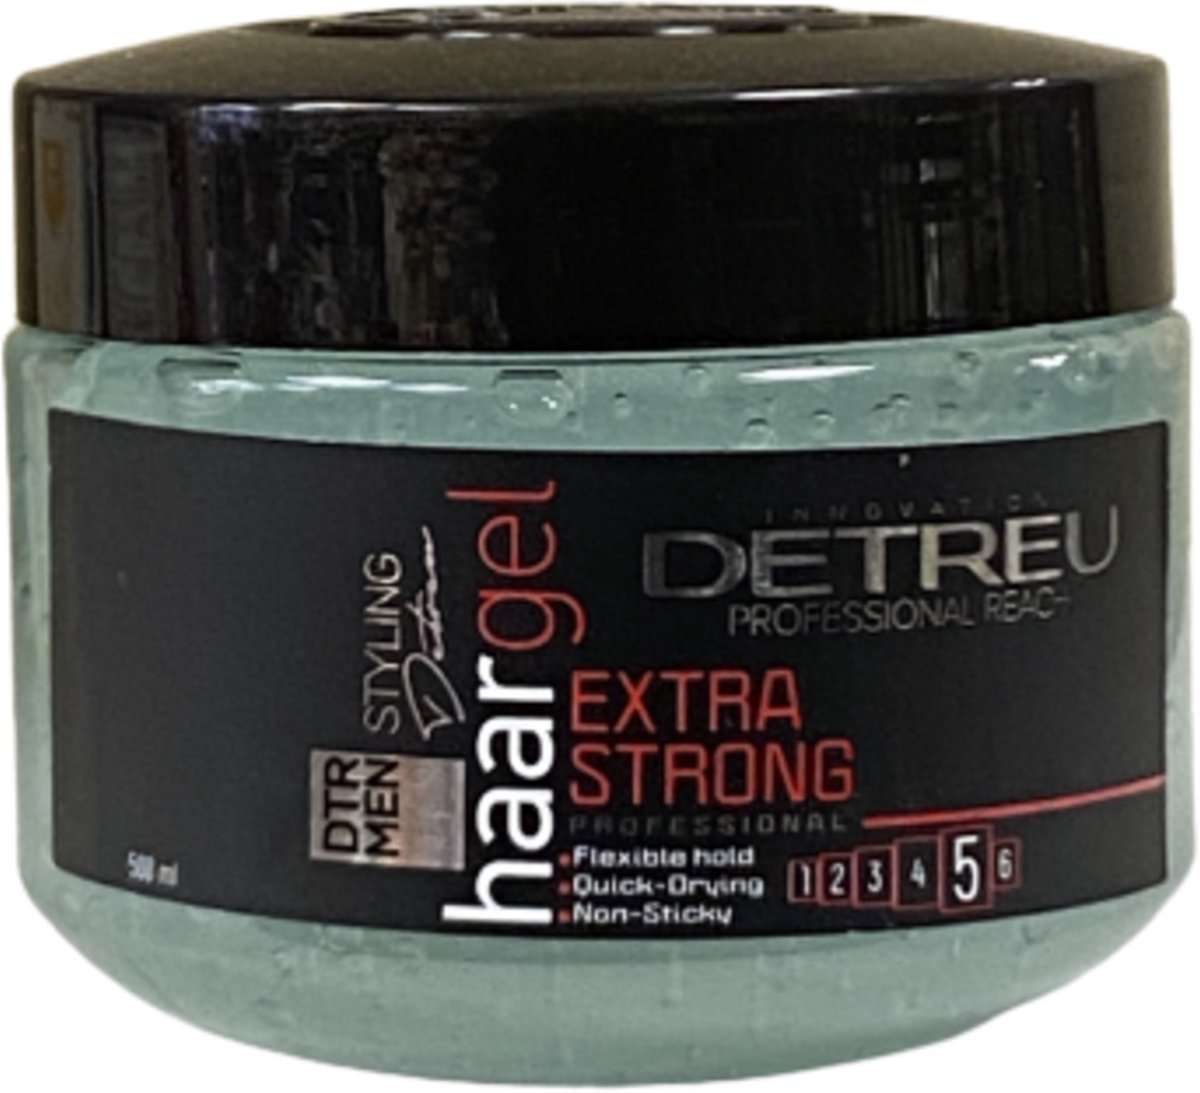 Detreu Men Extra Strong Hair Gel Level 5 500 ml